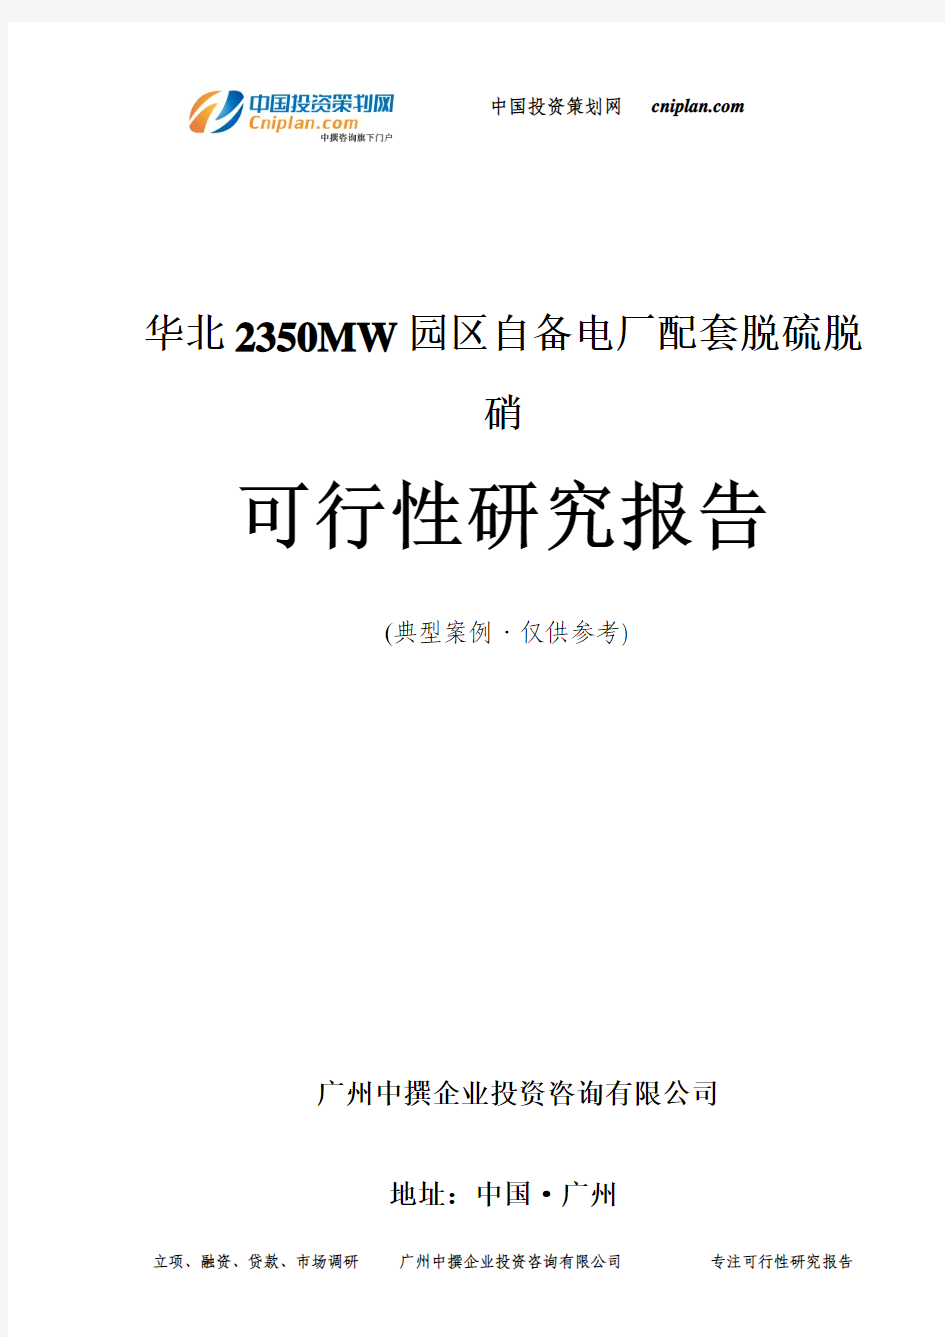 华北2350MW园区自备电厂配套脱硫脱硝可行性研究报告-广州中撰咨询